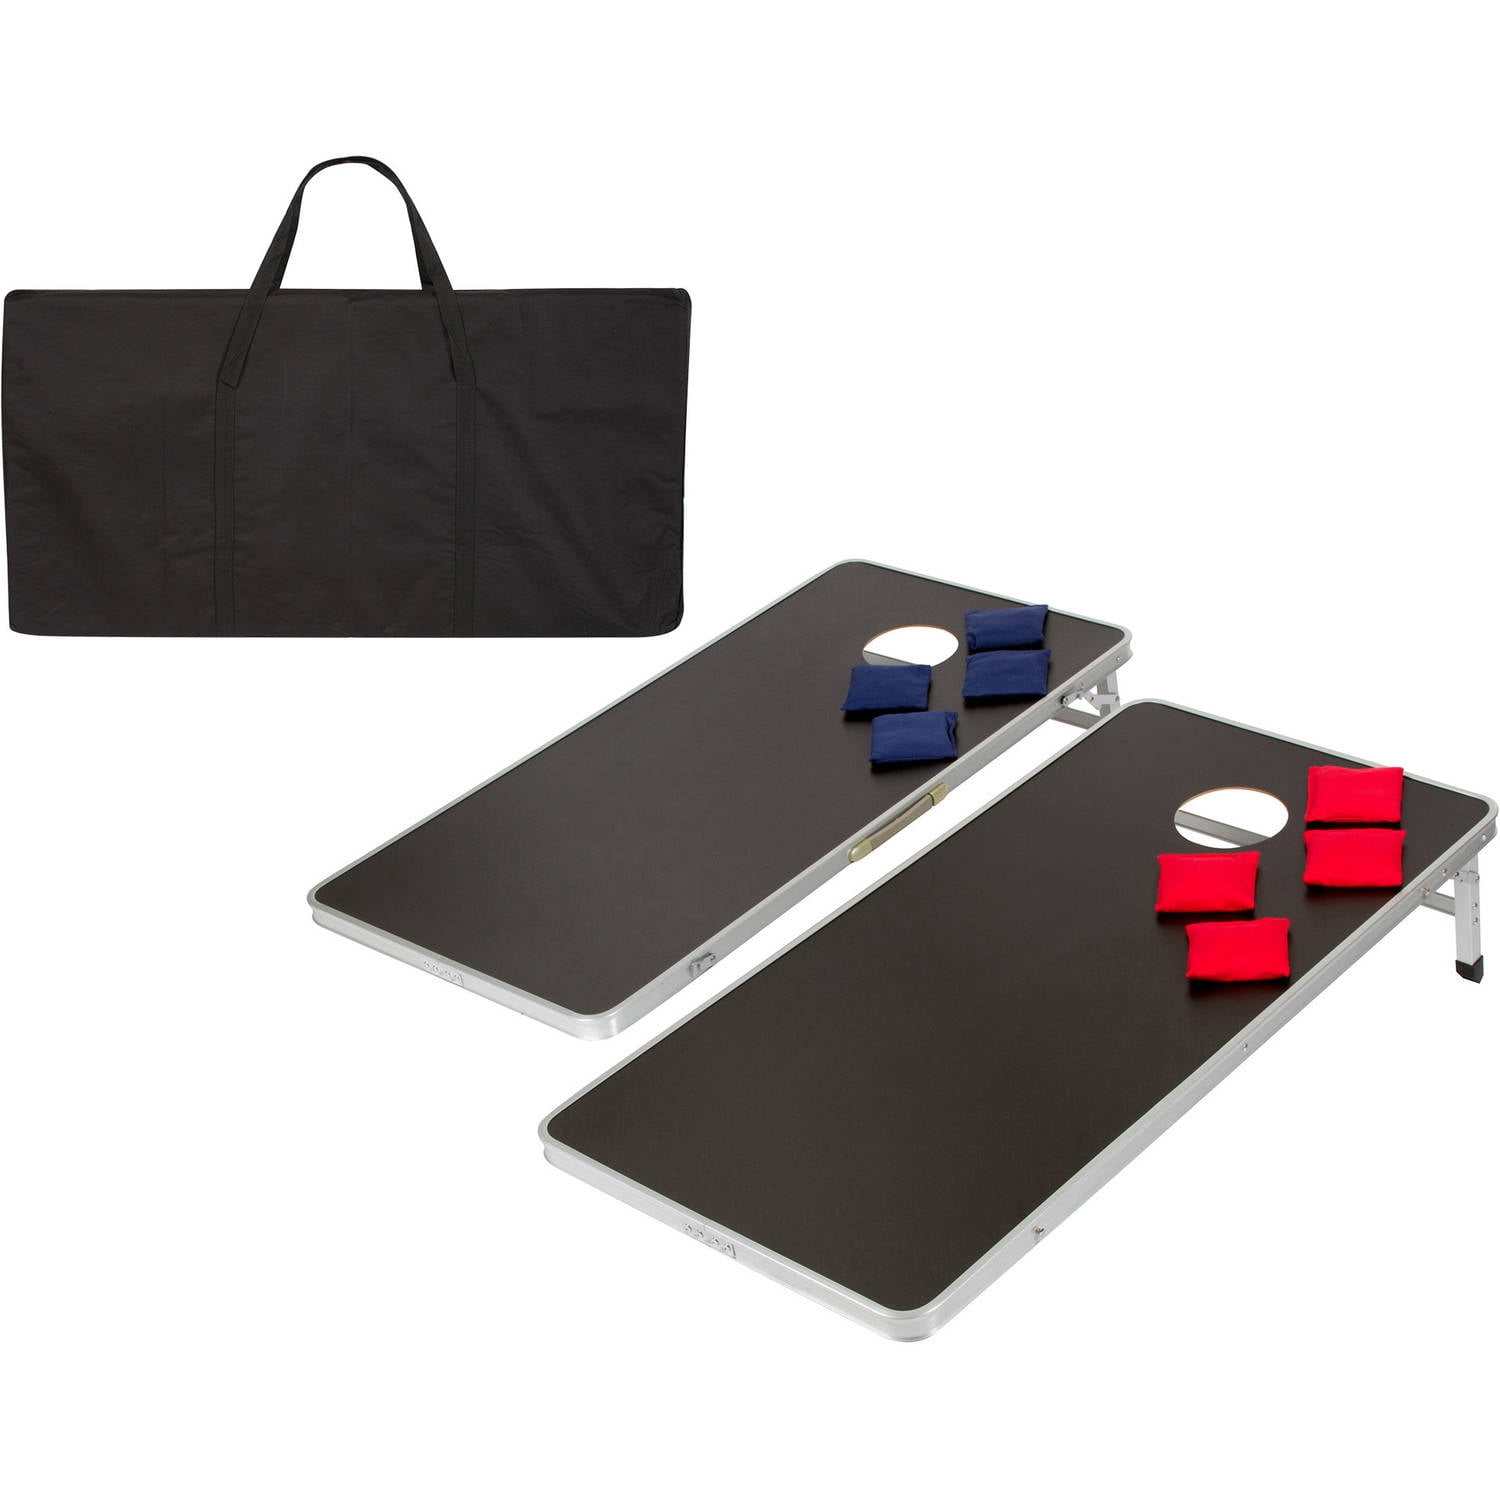 3 x 2FT Aluminium Cornhole Pro Two Size Bean Bag Toss Game Set4 x 2FT 